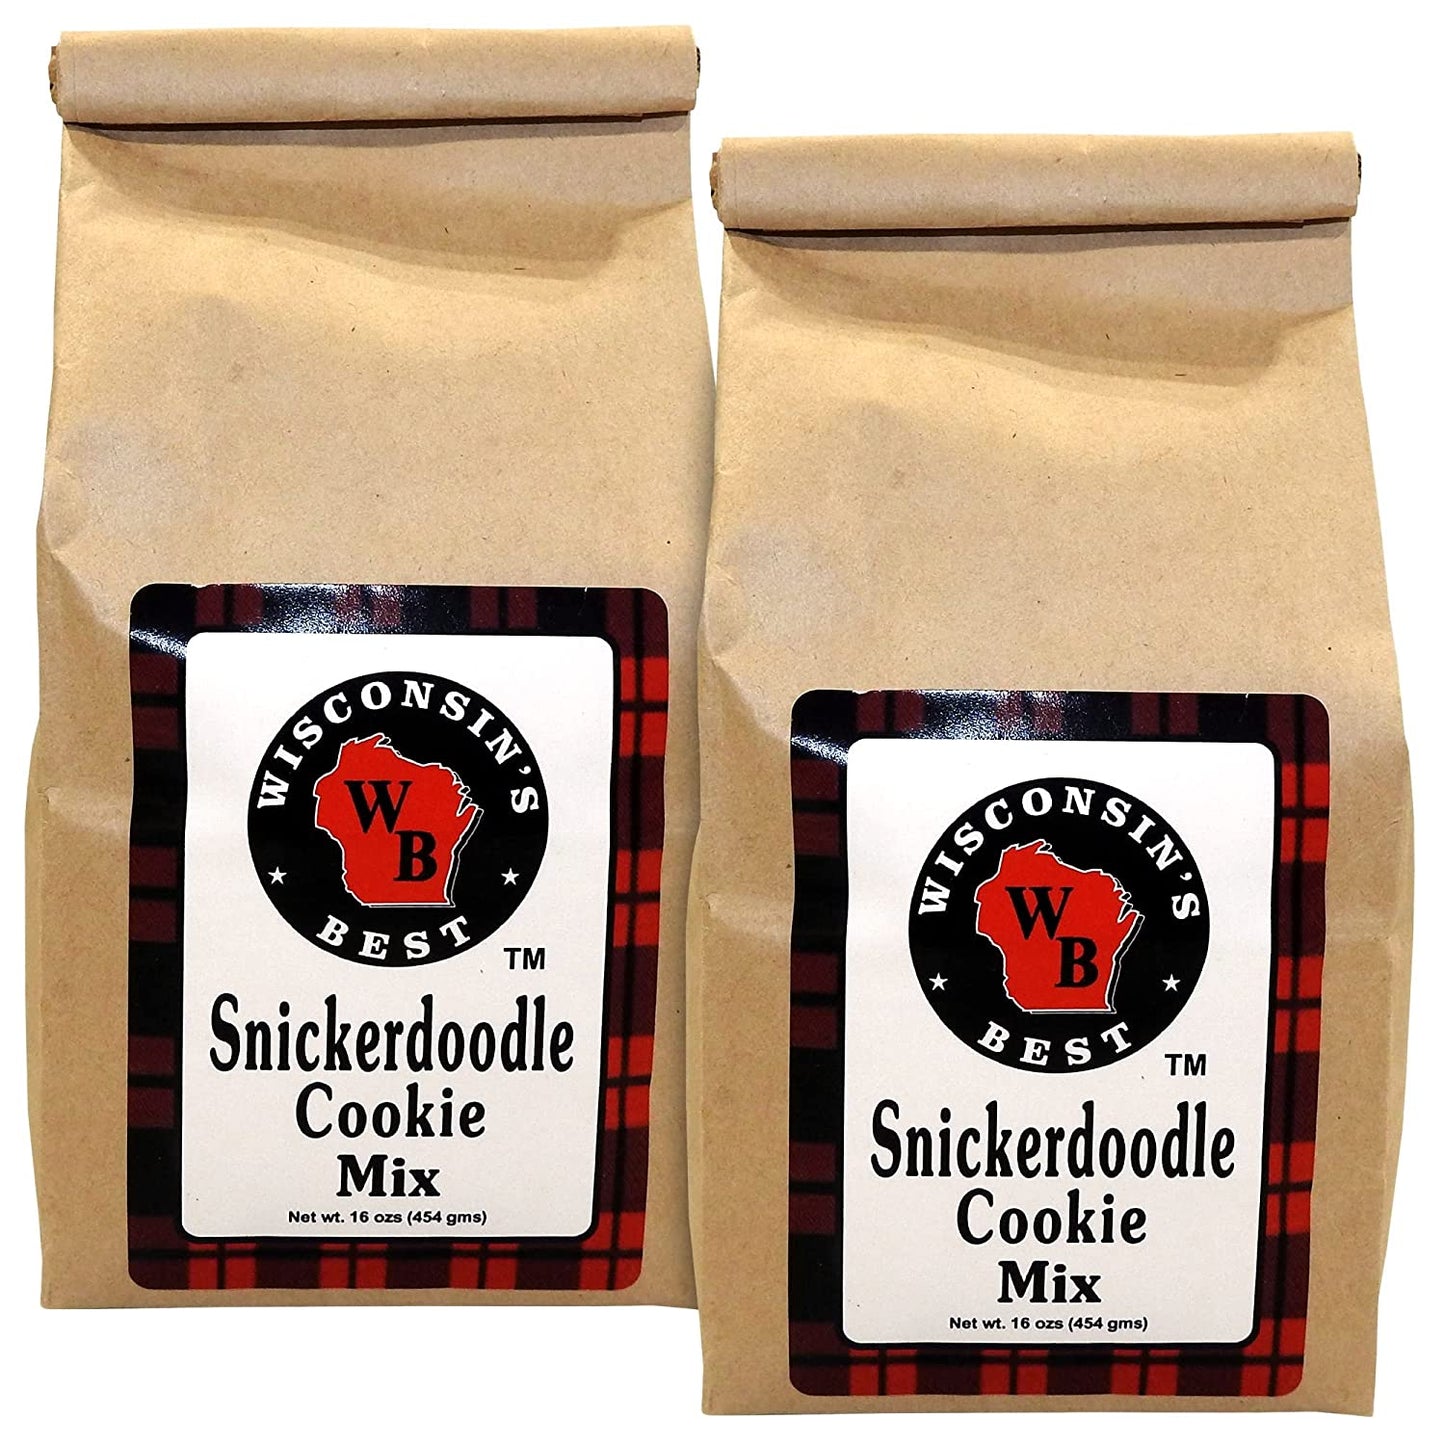 Wisconsin's Best Snickerdoodle Cookie Mix